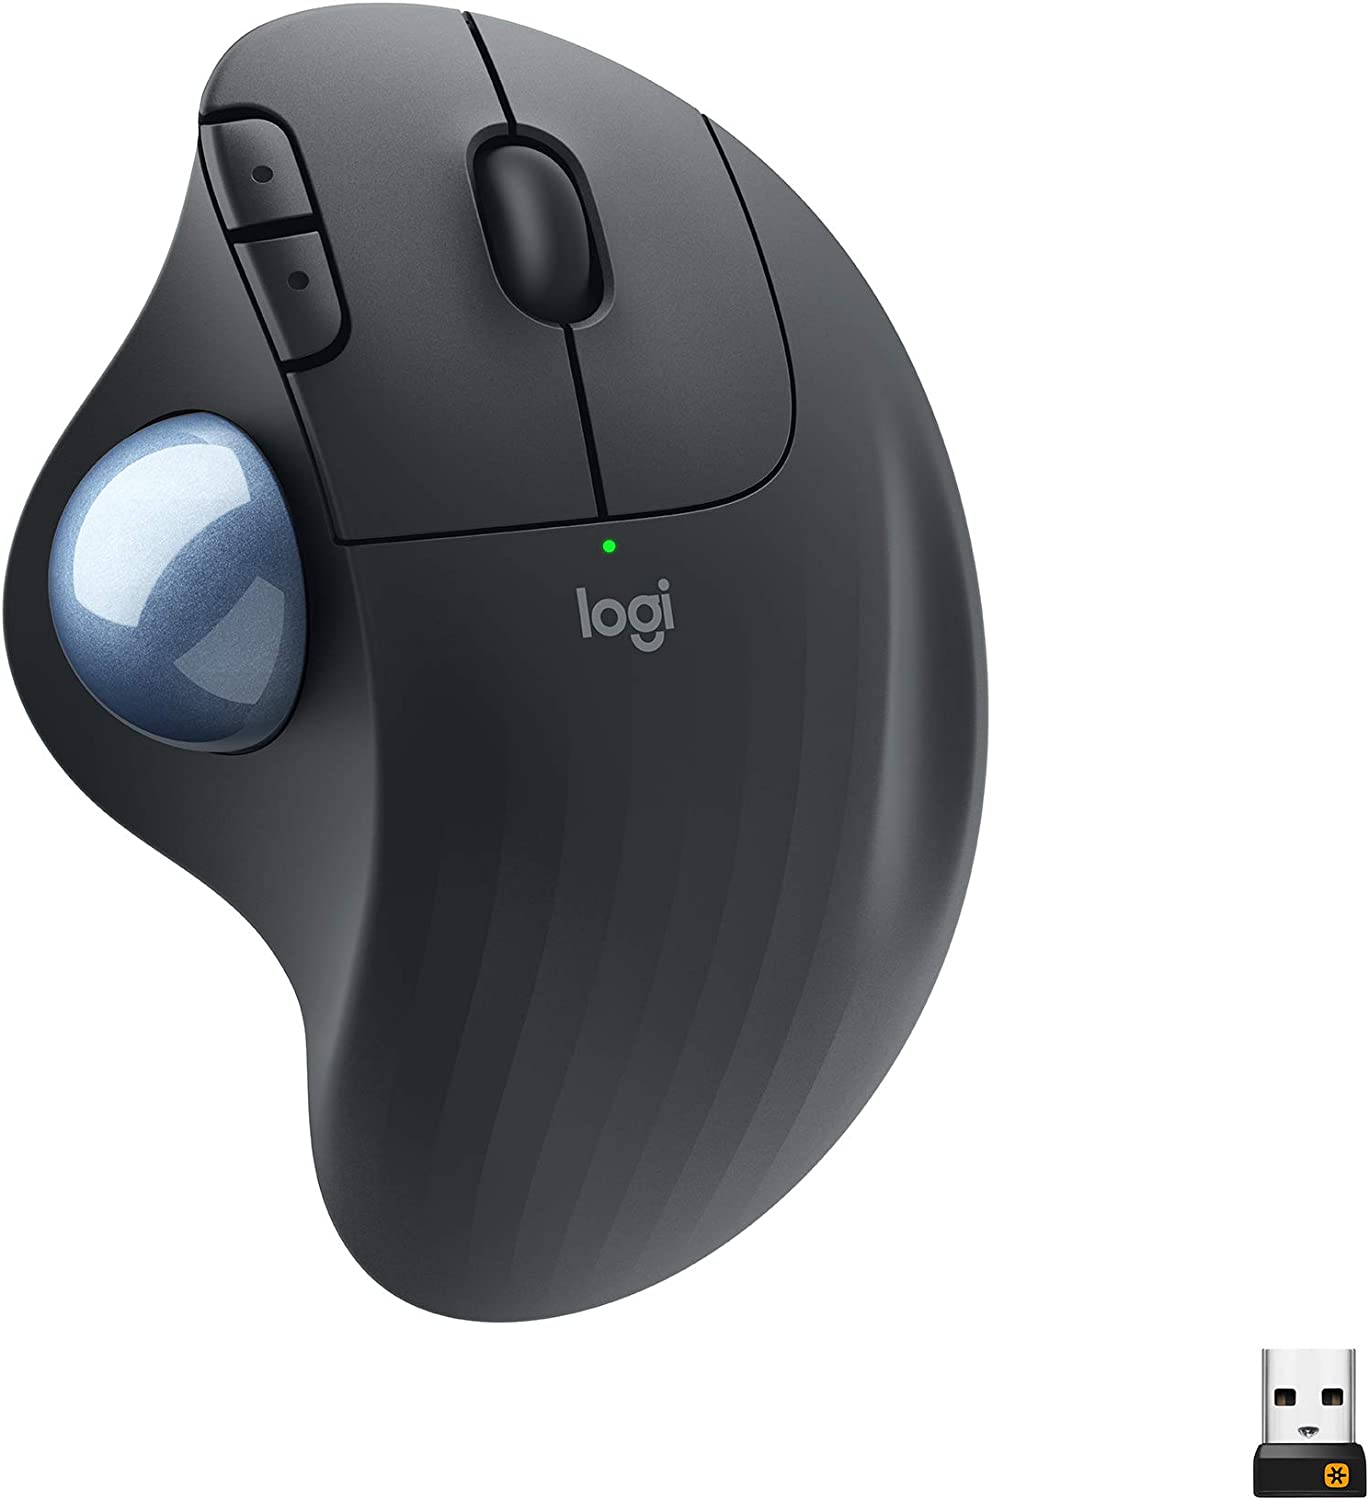 Bild zu Wireless Trackball Maus Logitech Ergo M575 für 24,99€ (Vergleich: 45,99€)